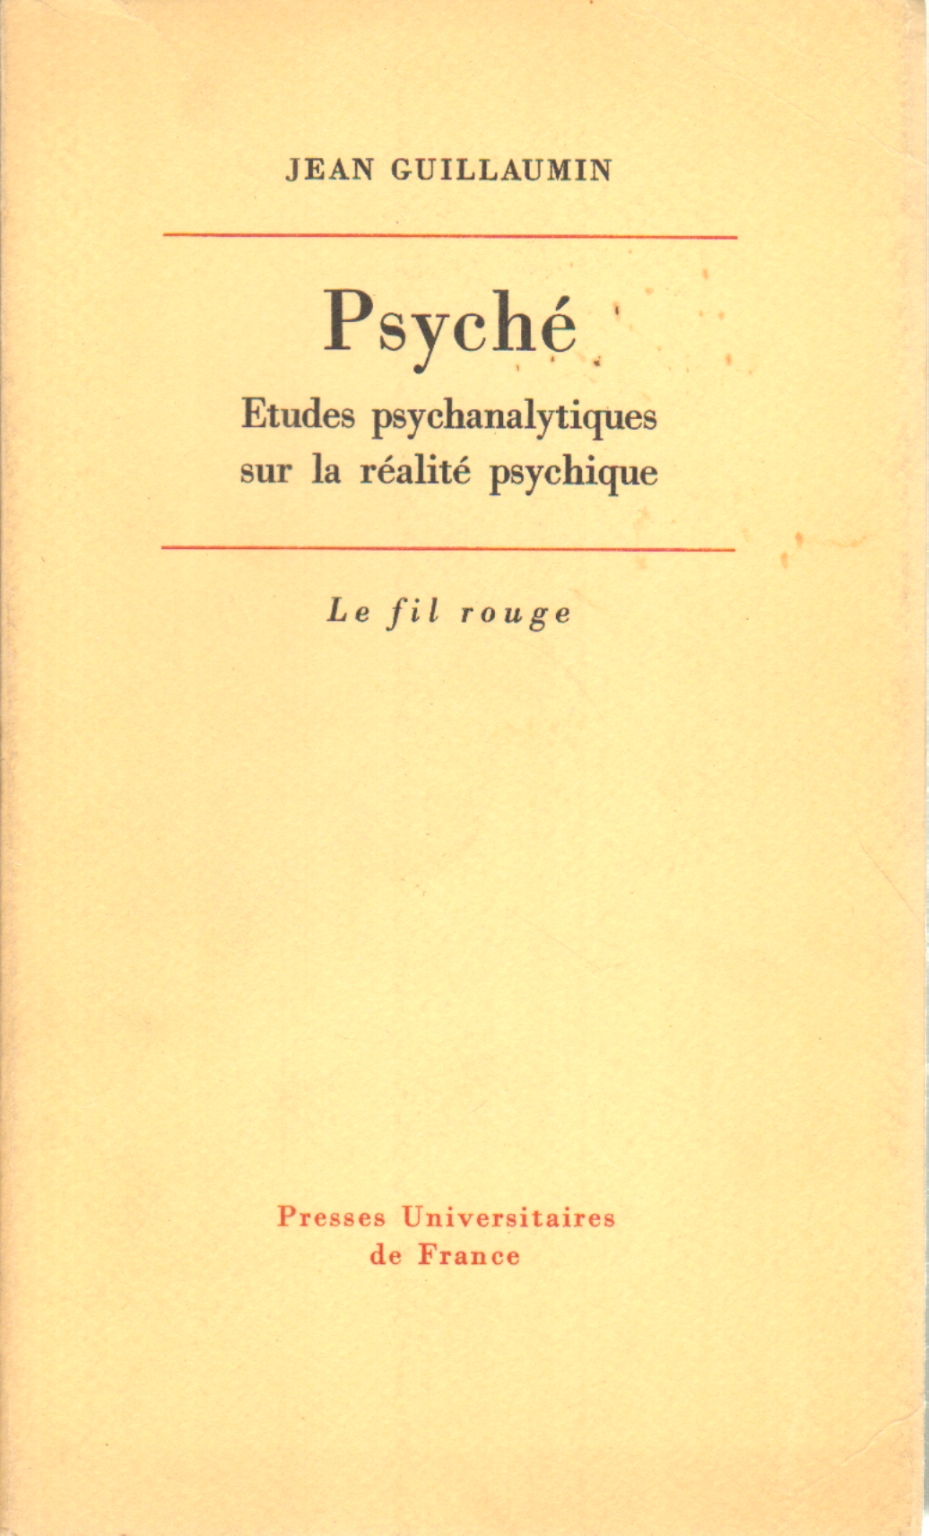 Psyche, Jean Guillaumin